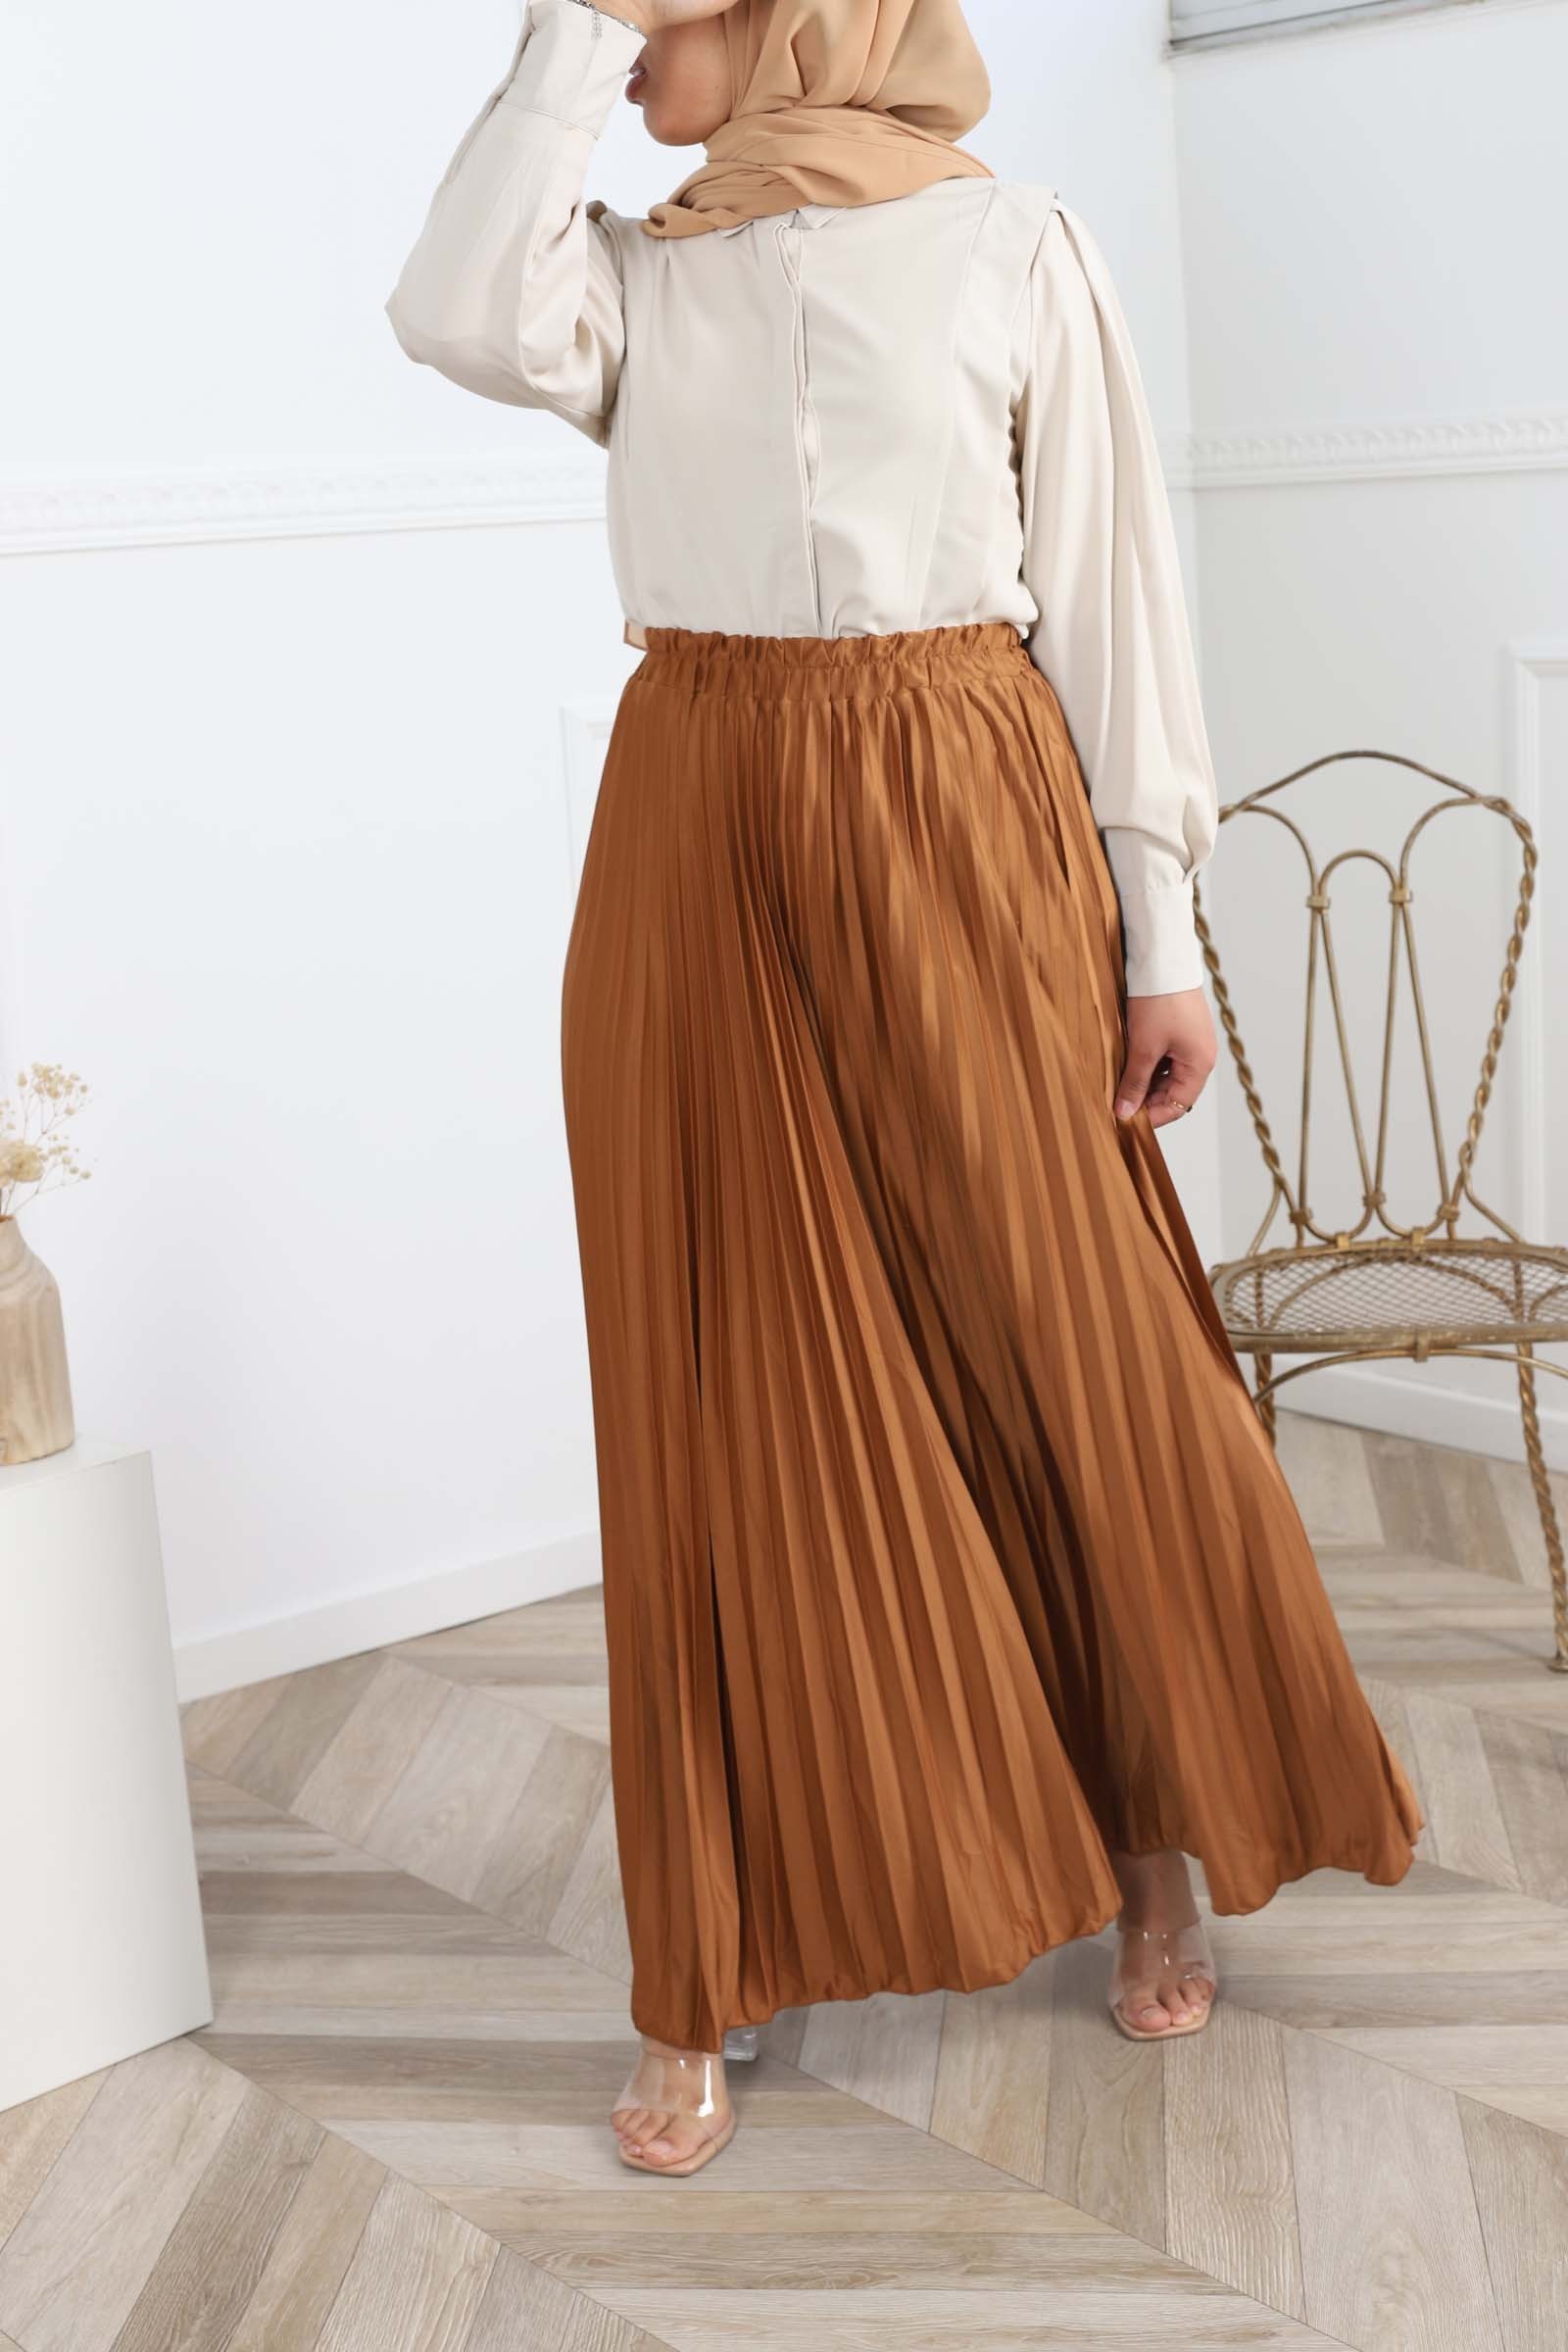 Long pleated skirt, summer 2022, nice and fluid